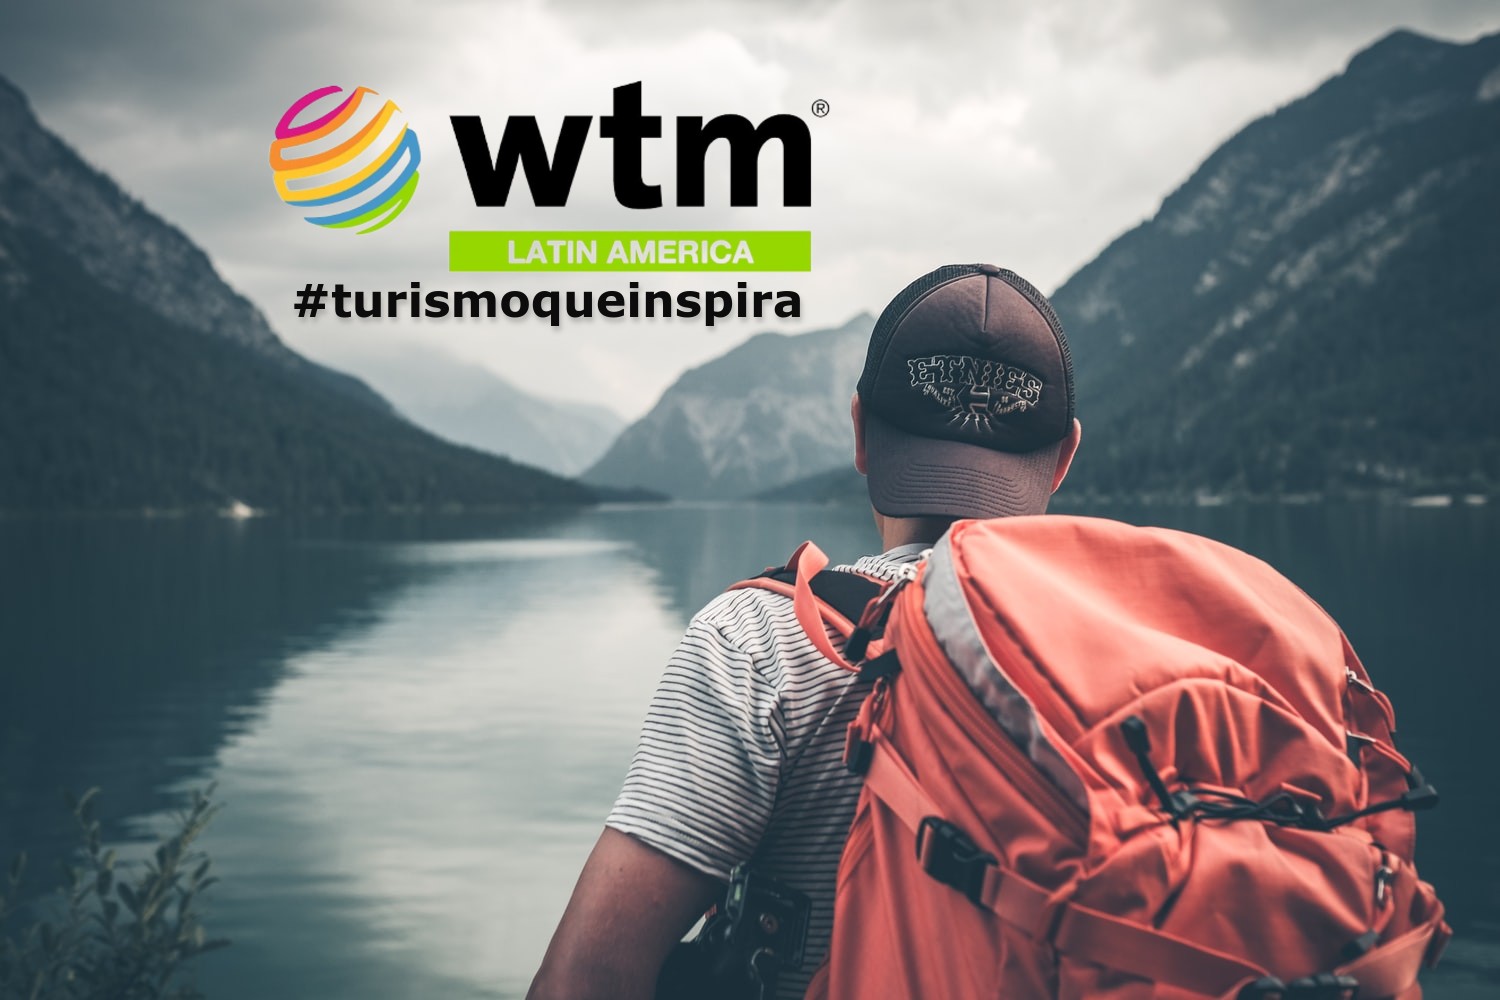 turista con gorra y mochila, de espalda, mirando un lago entre montañas, sello de WTM Latin America y hasgtag de la campaña